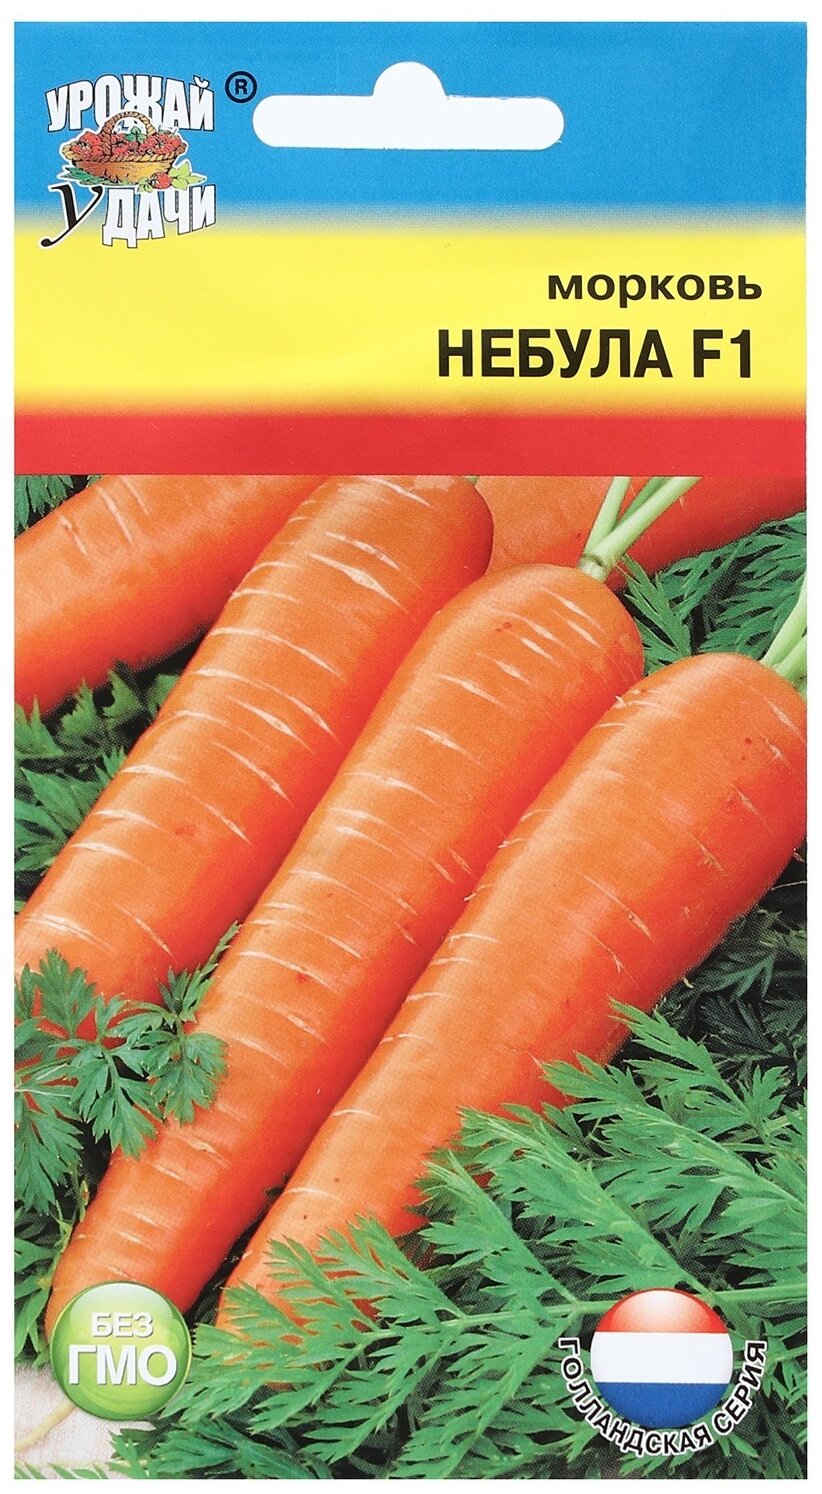 Семена Урожай удачи Морковь Небула F1 0.2 г